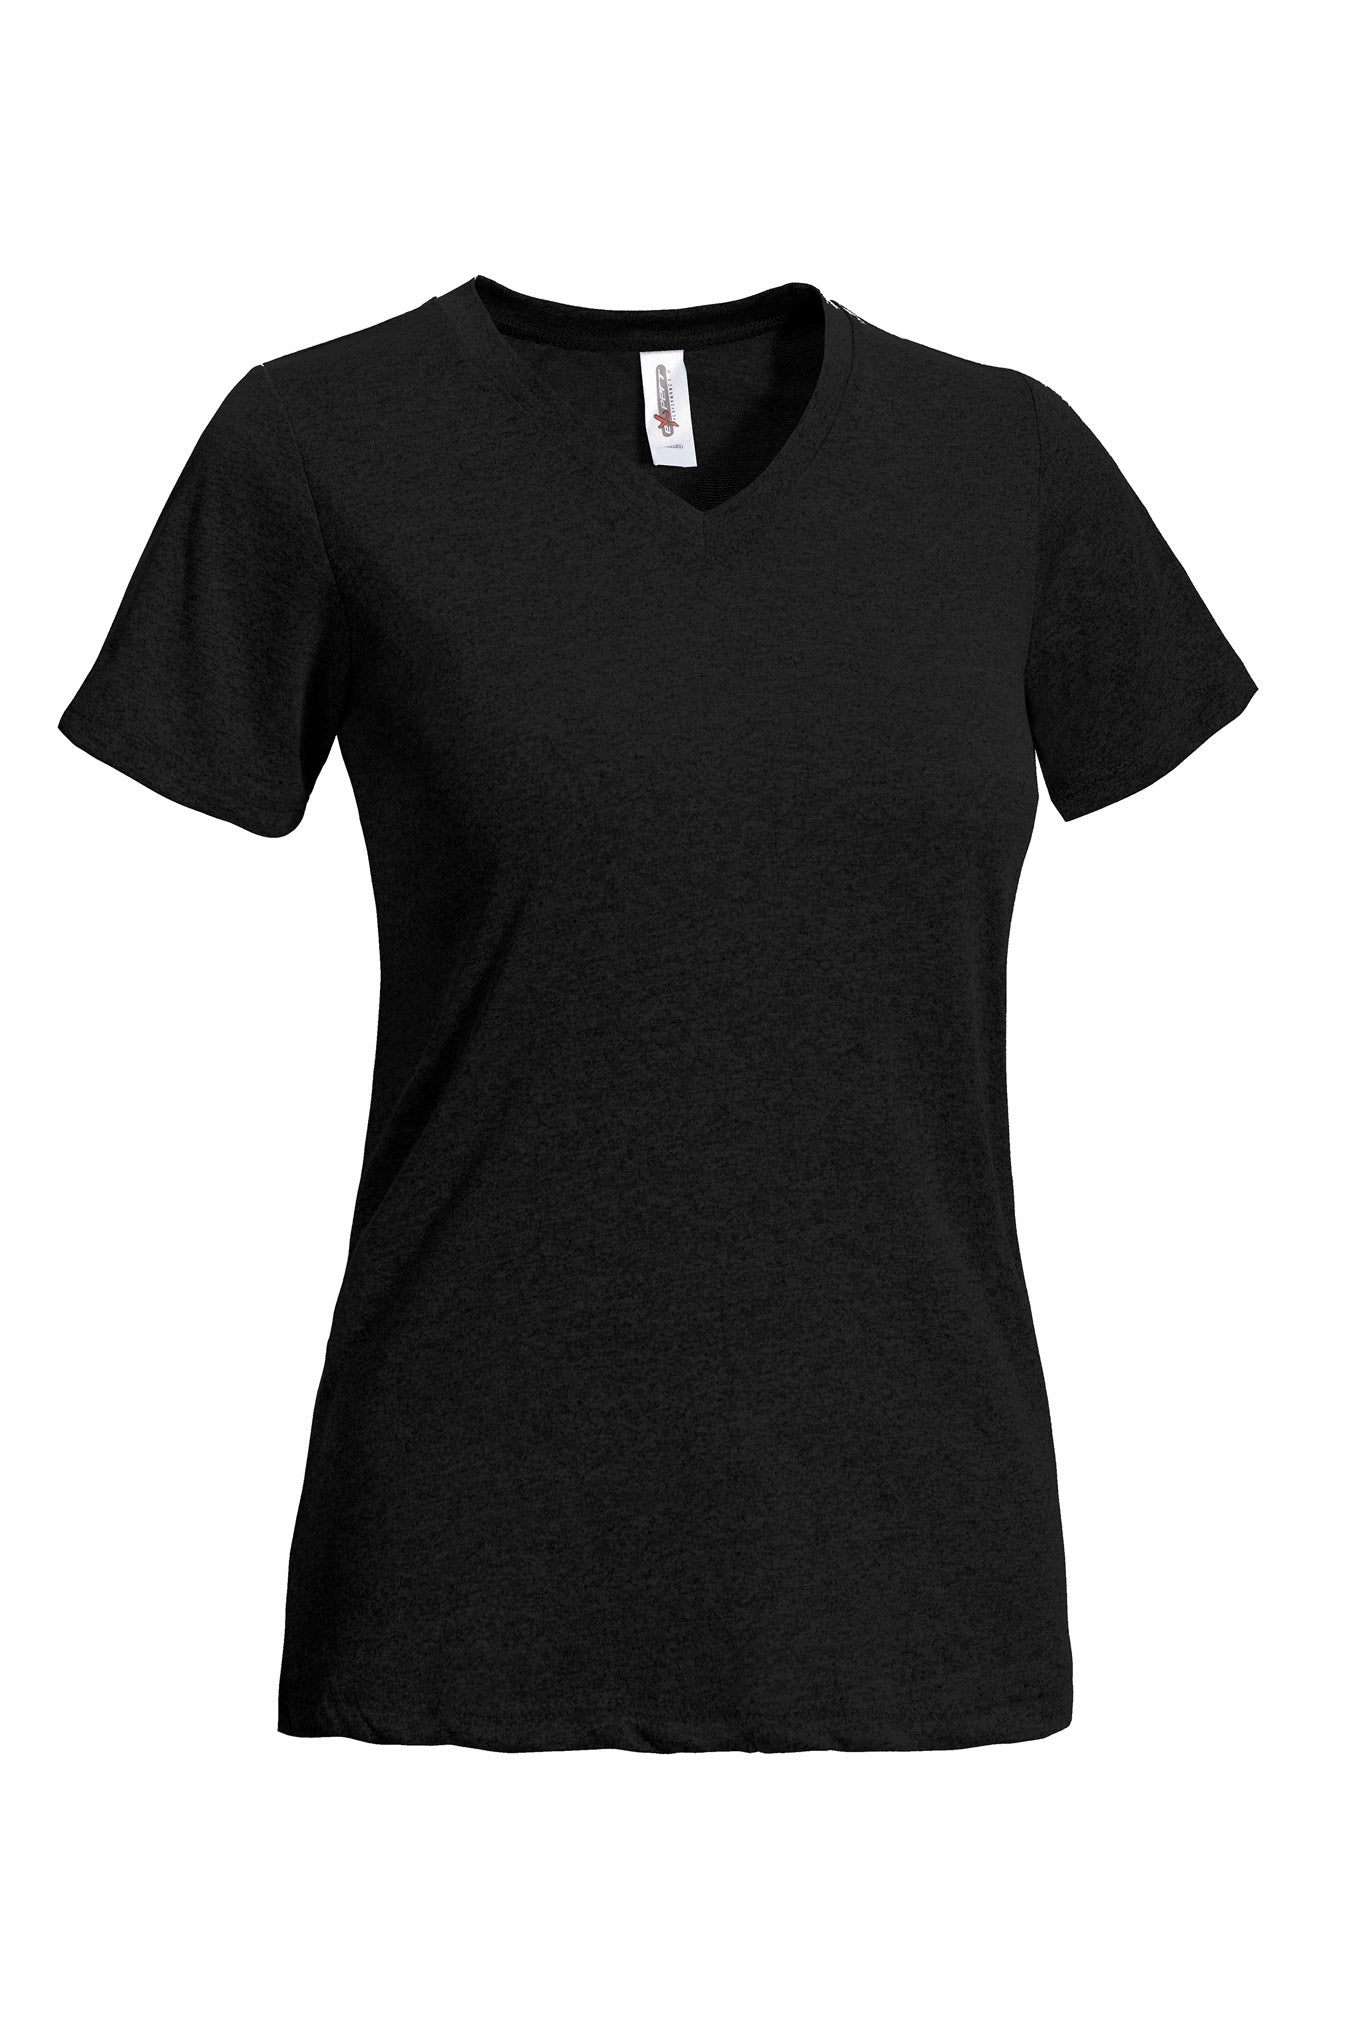 Natural Feel Jersey V-Neck T-Shirt 🇺🇸 - Expert Brand Apparel#color_black